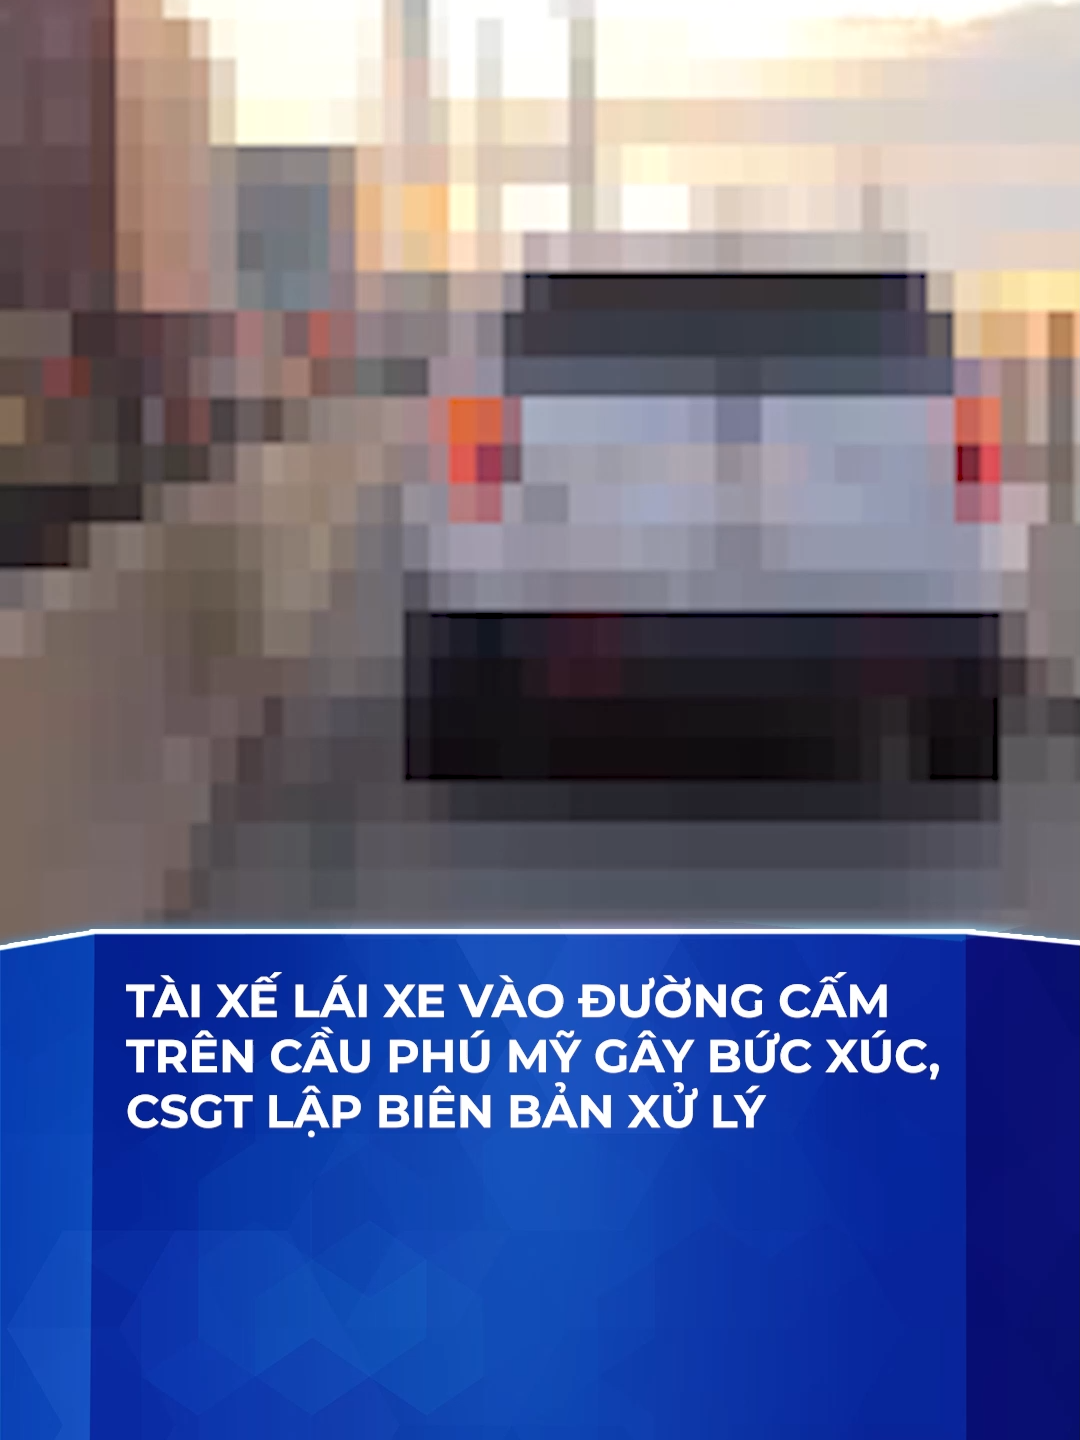 Tài xế lái xe vào đường cấm trên cầu Phú Mỹ gây bức xúc, CSGT lập biên bản xử lý #csgt #cauphumy #duongcam